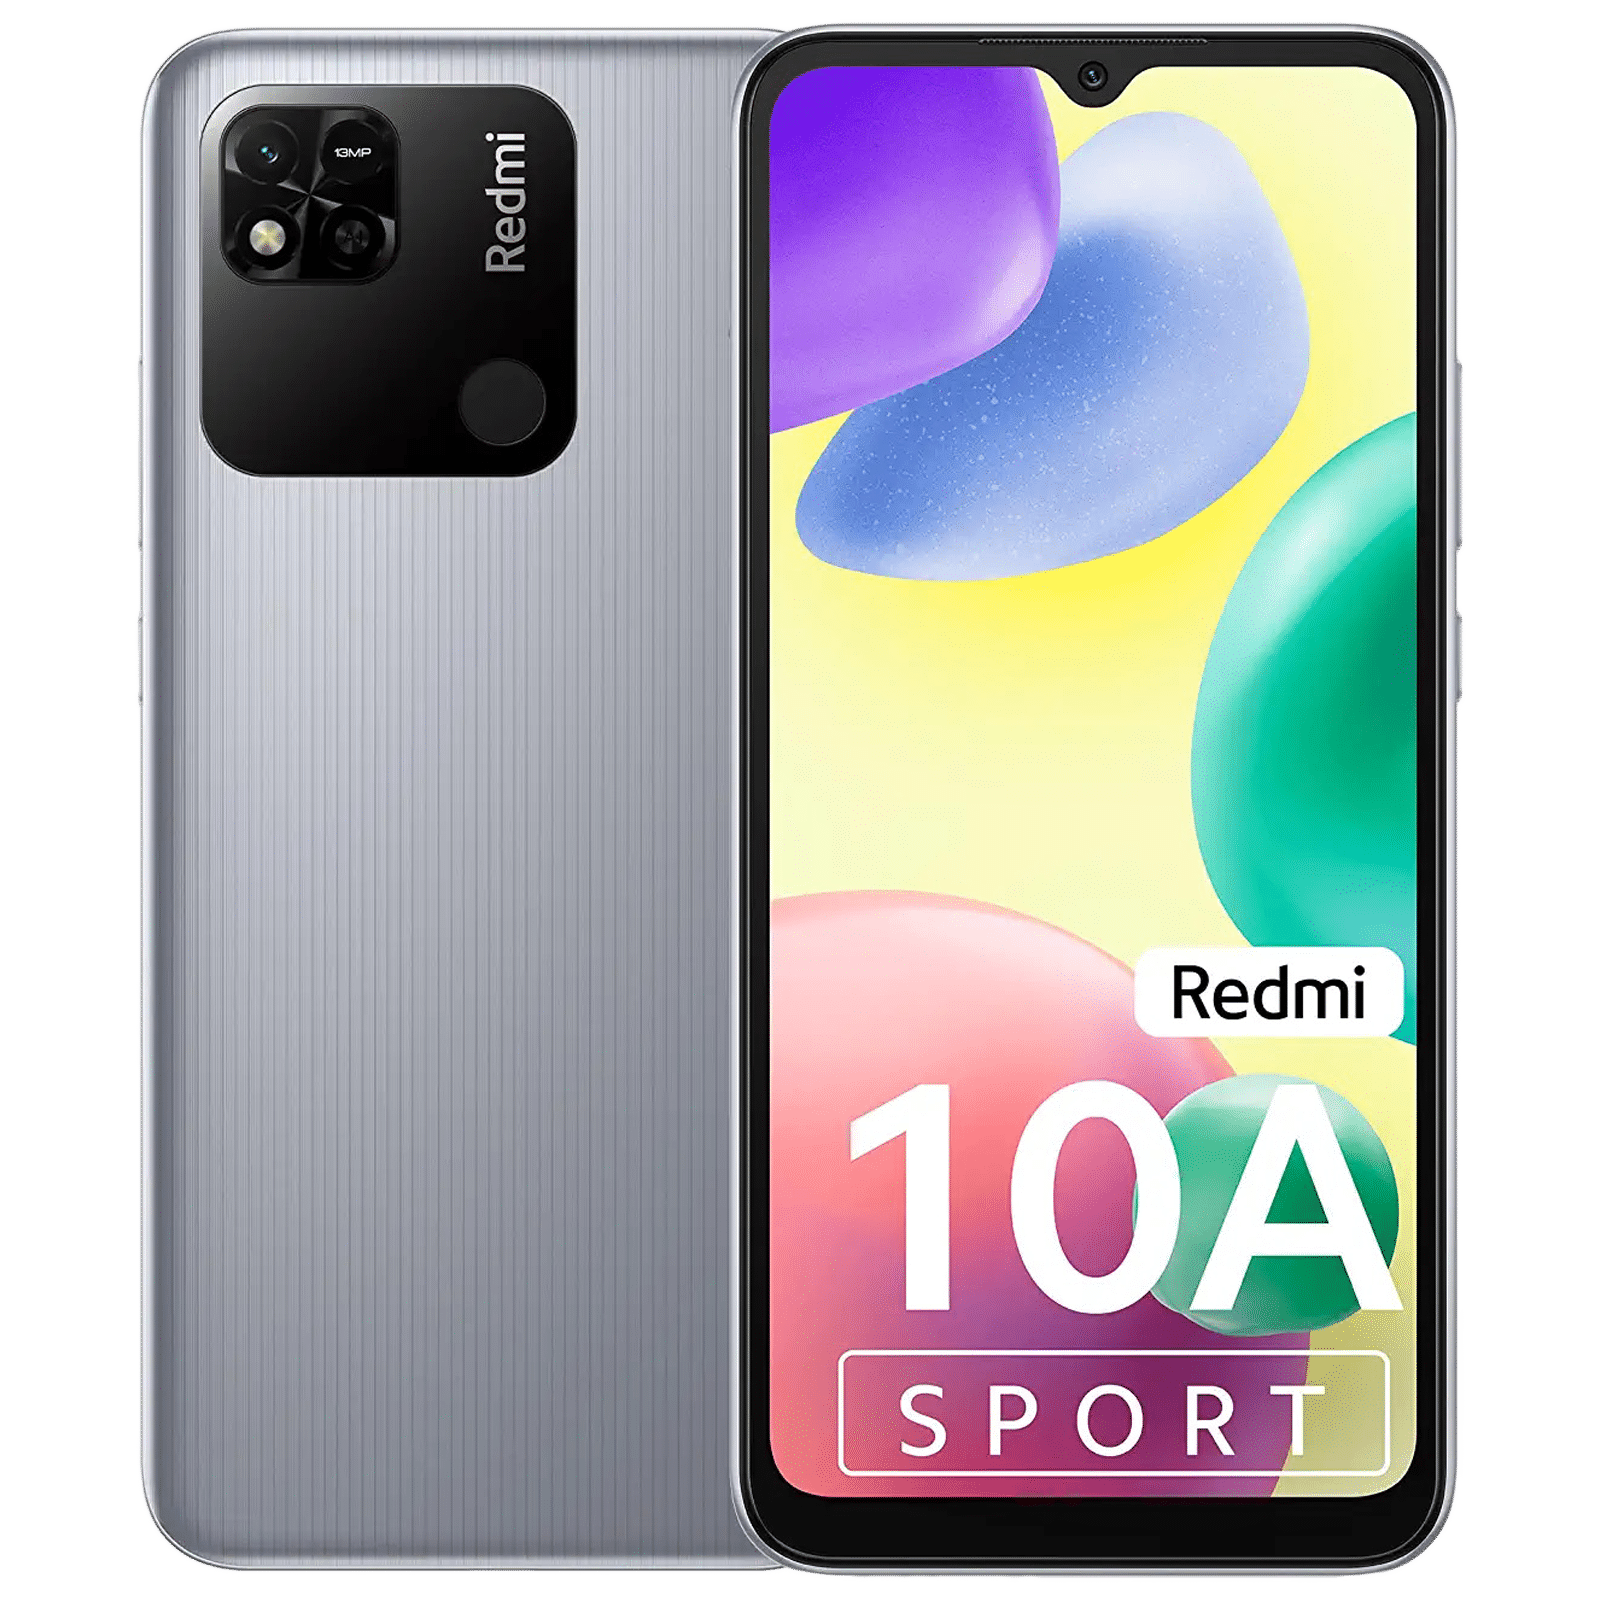 REDMI 10A SPORT (SLATE GREY, 128 GB)